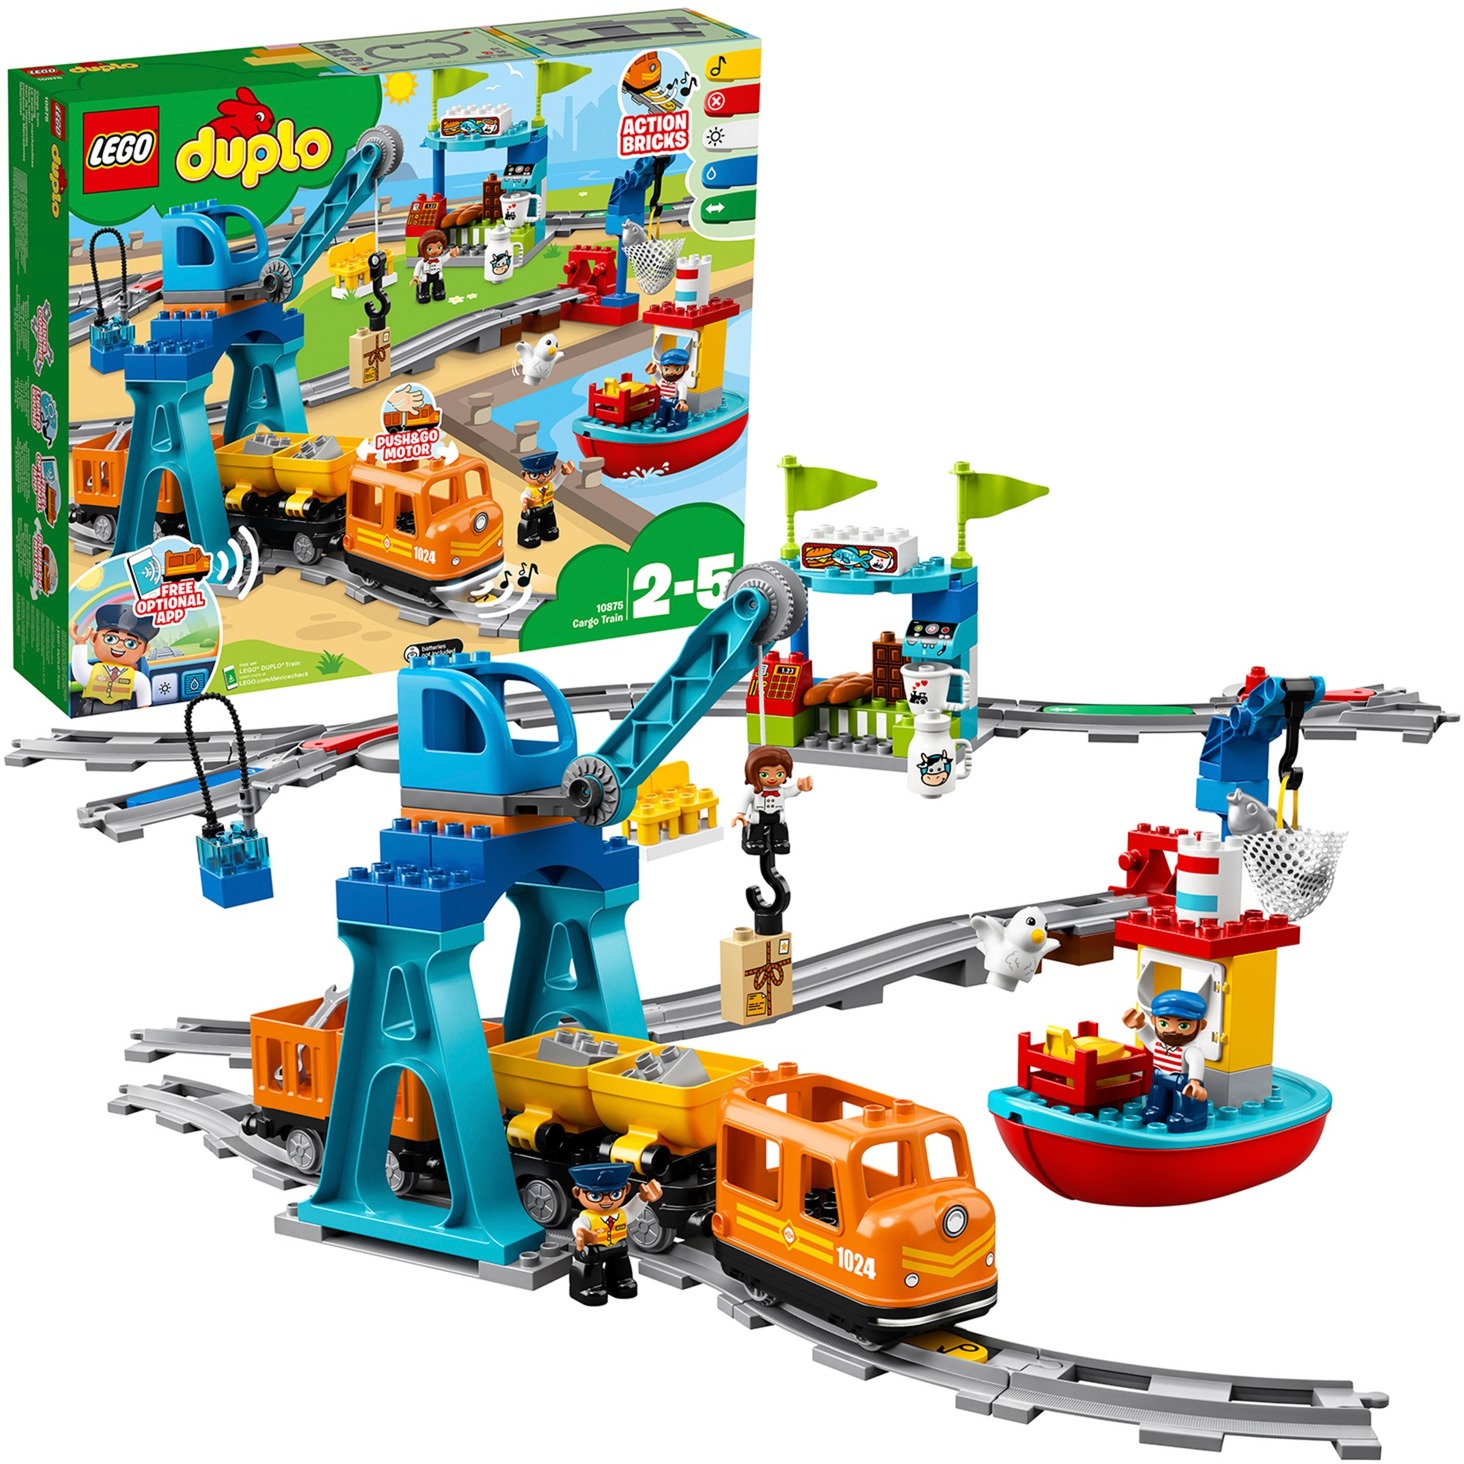 10875 DUPLO Güterzug, Konstruktionsspielzeug von Lego